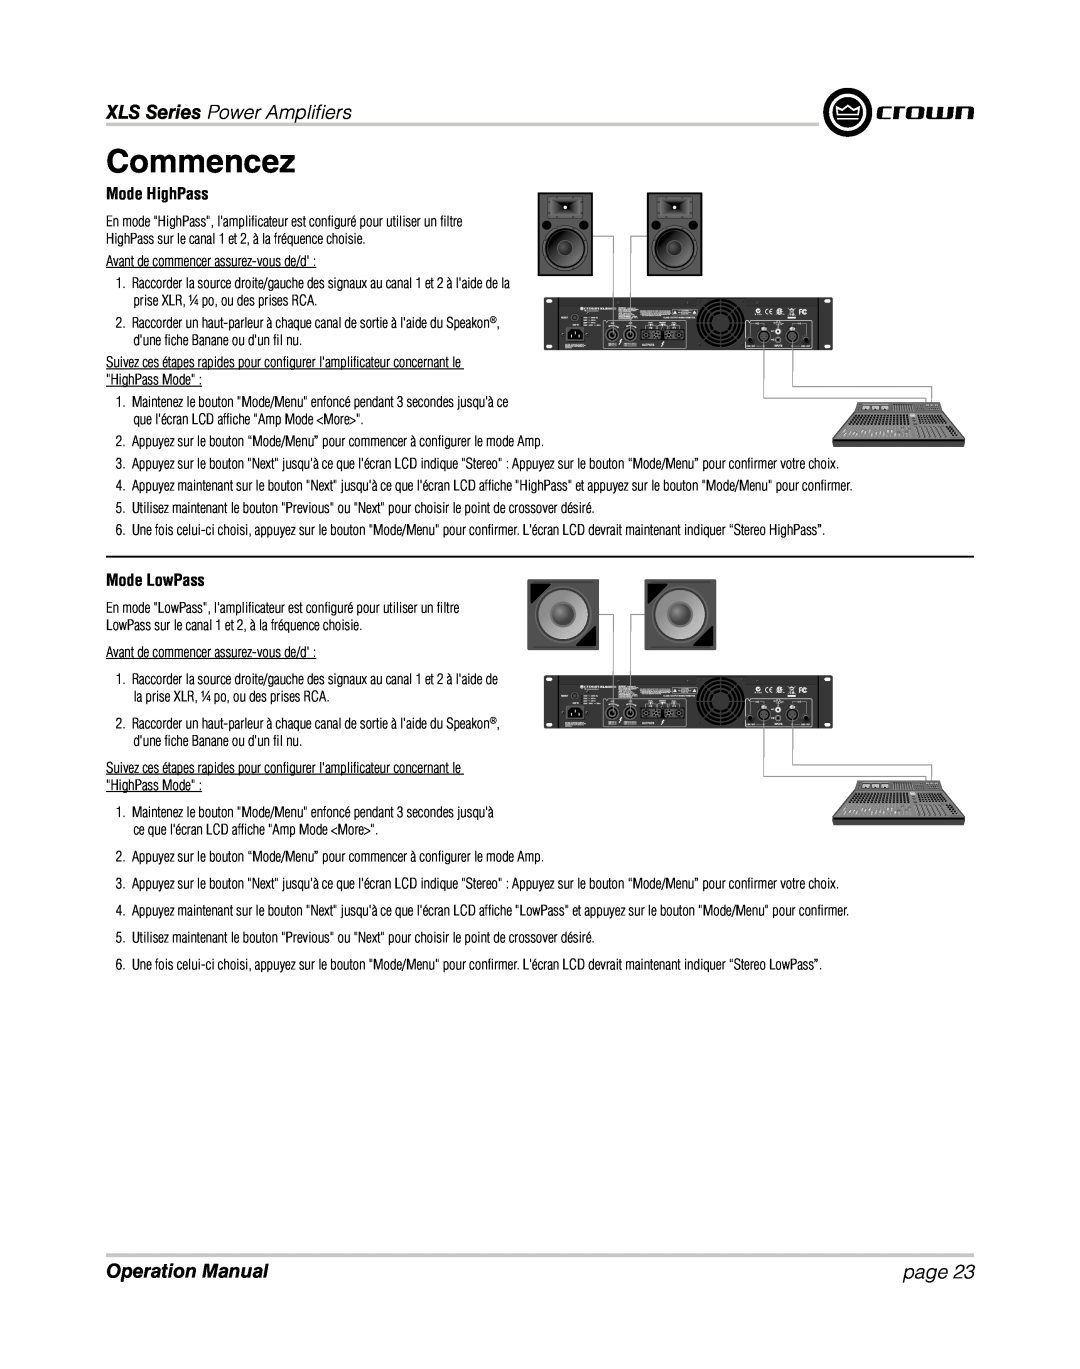 Crown XLS 1000 operation manual Mode HighPass, Mode LowPass, Commencez, XLS Series Power Ampliﬁ ers, page 